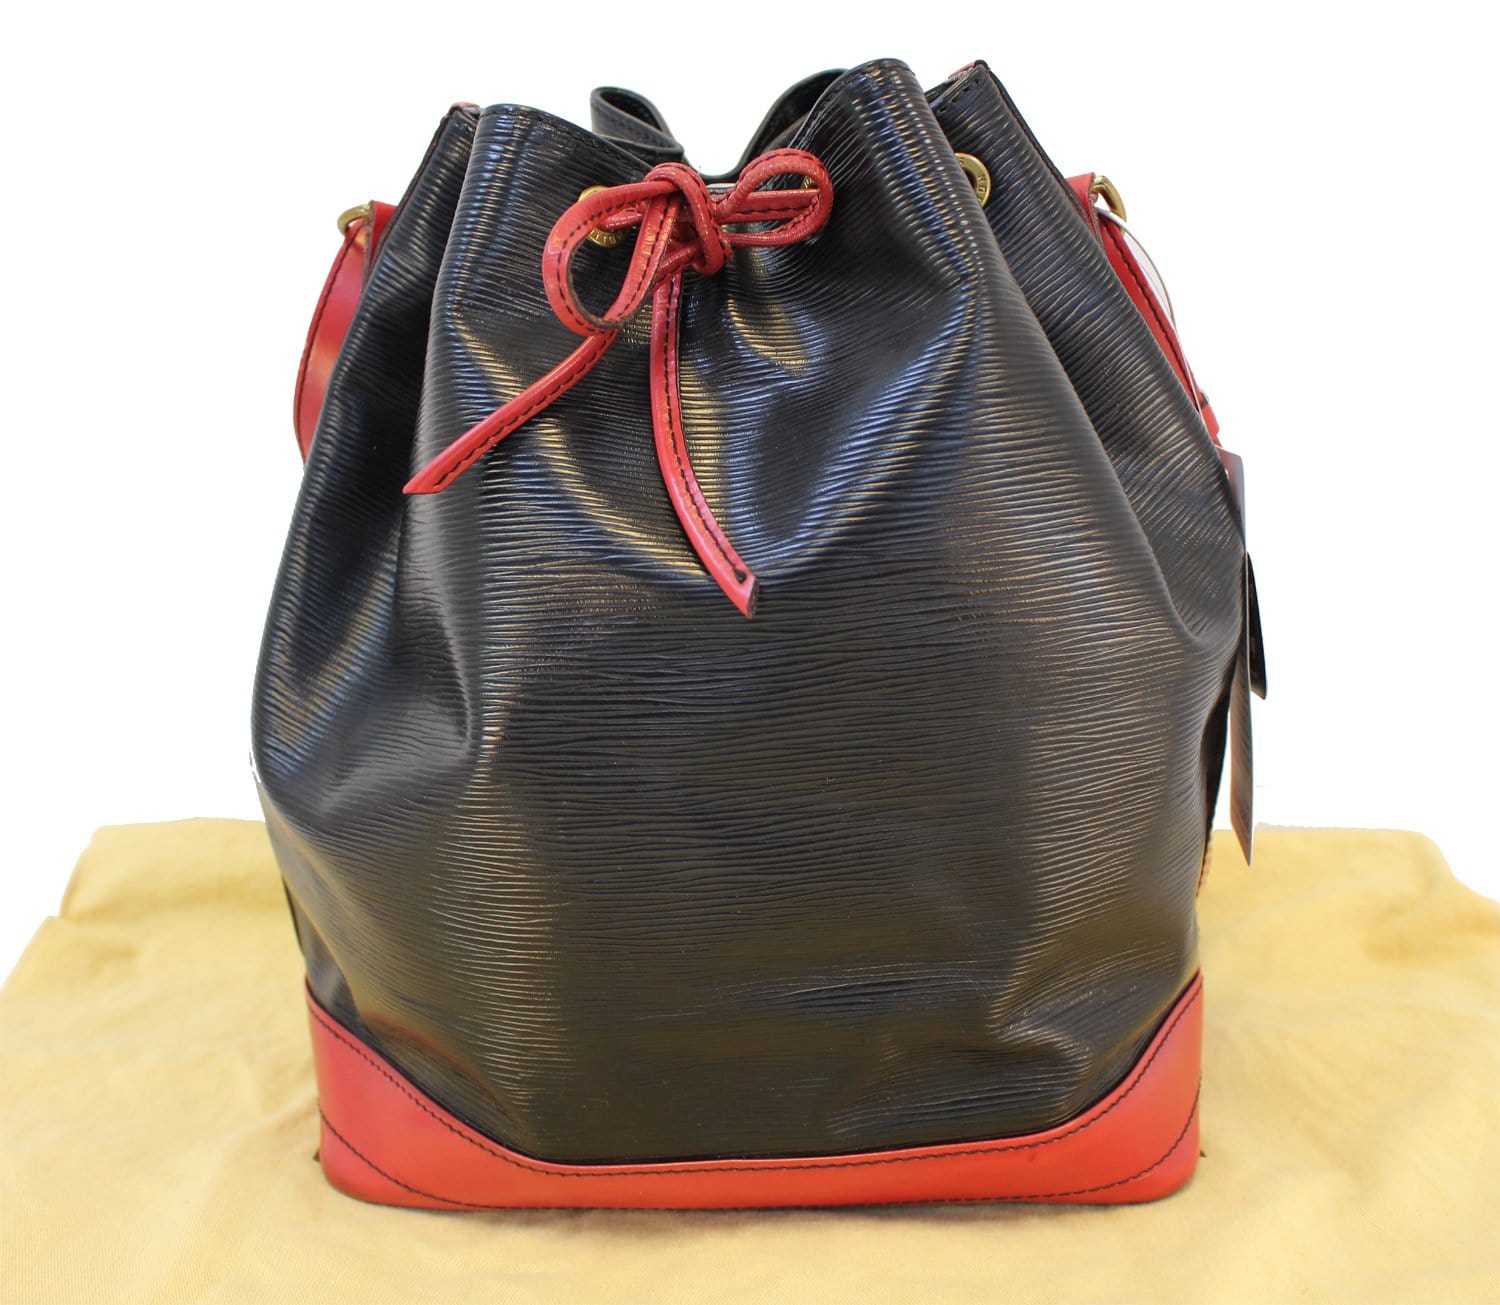 Louis Vuitton Noe GM Tri-Color EPI Leather Bucket Bag, France 1992